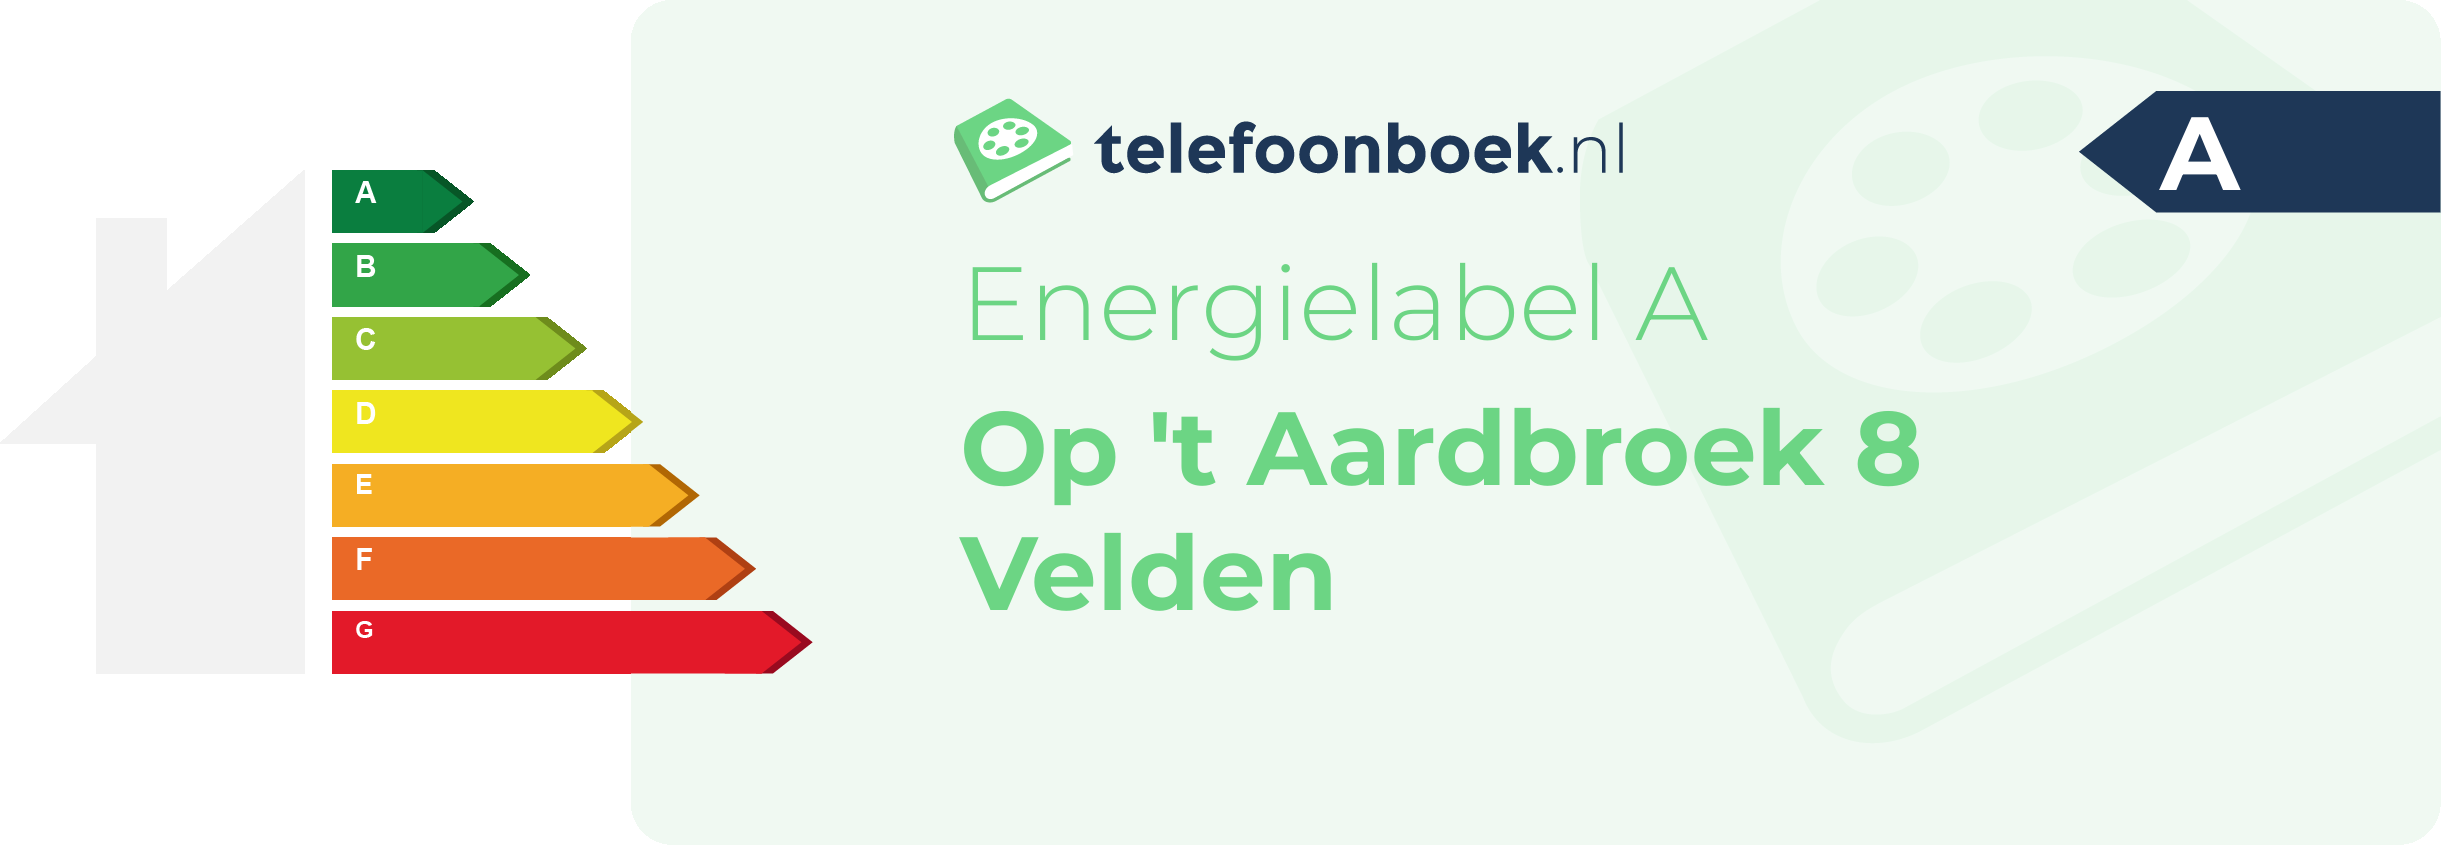 Energielabel Op 't Aardbroek 8 Velden